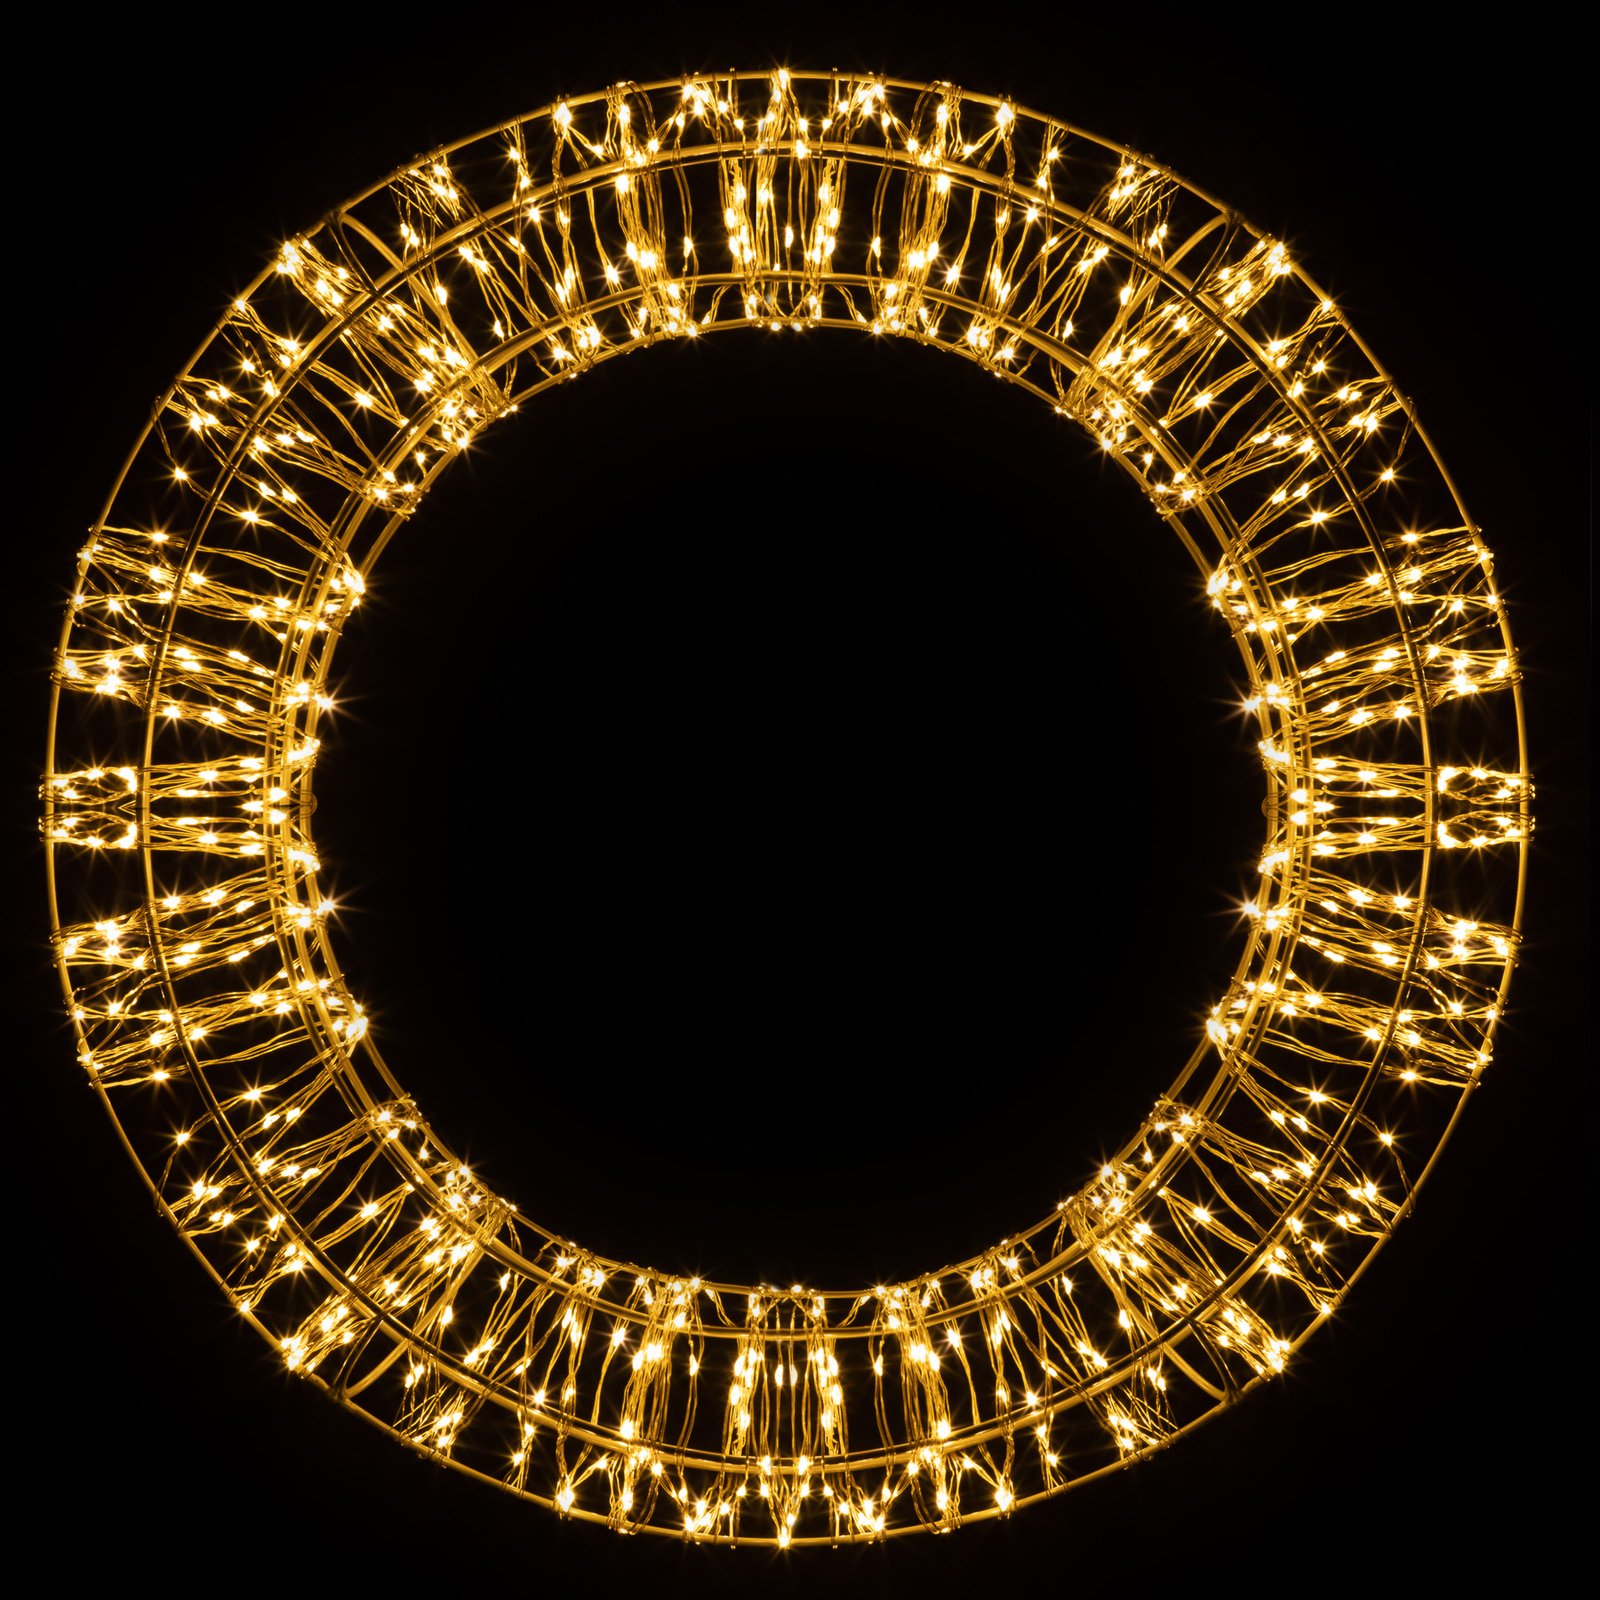 LED-Weihnachtskranz, gold, 600 LEDs, Ø 40cm